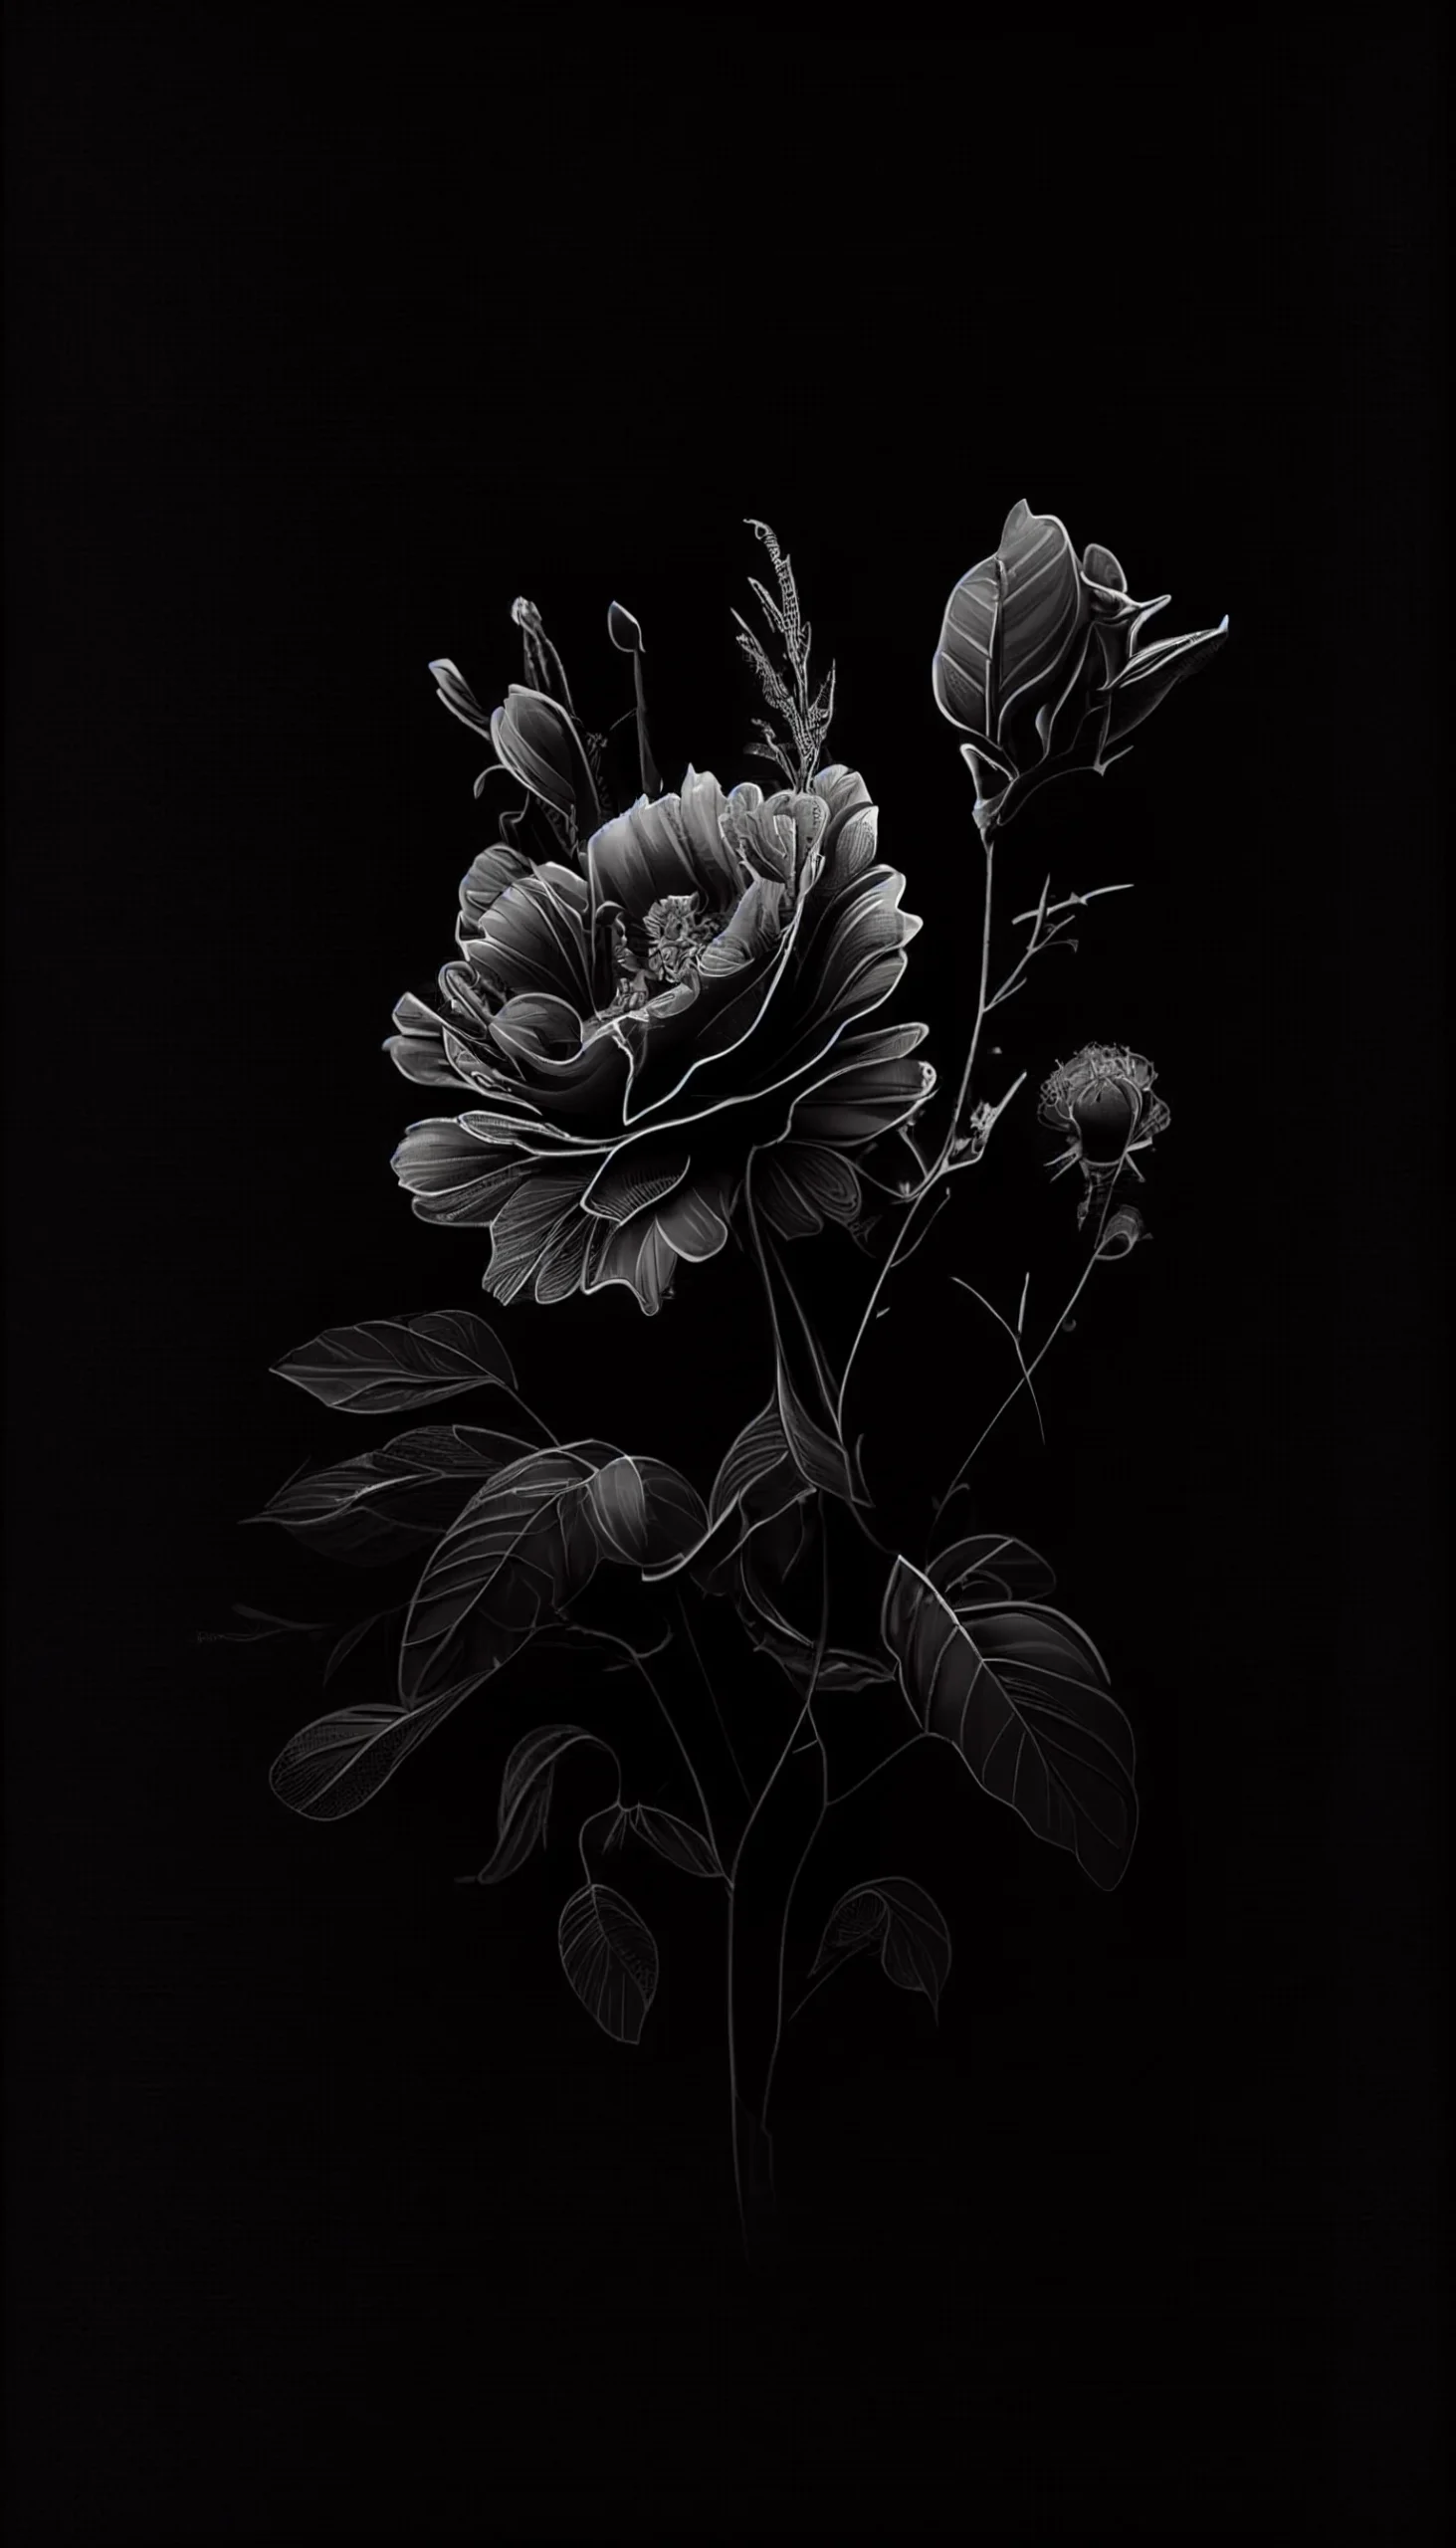 iPhone black aesthetic wallpaper for girls